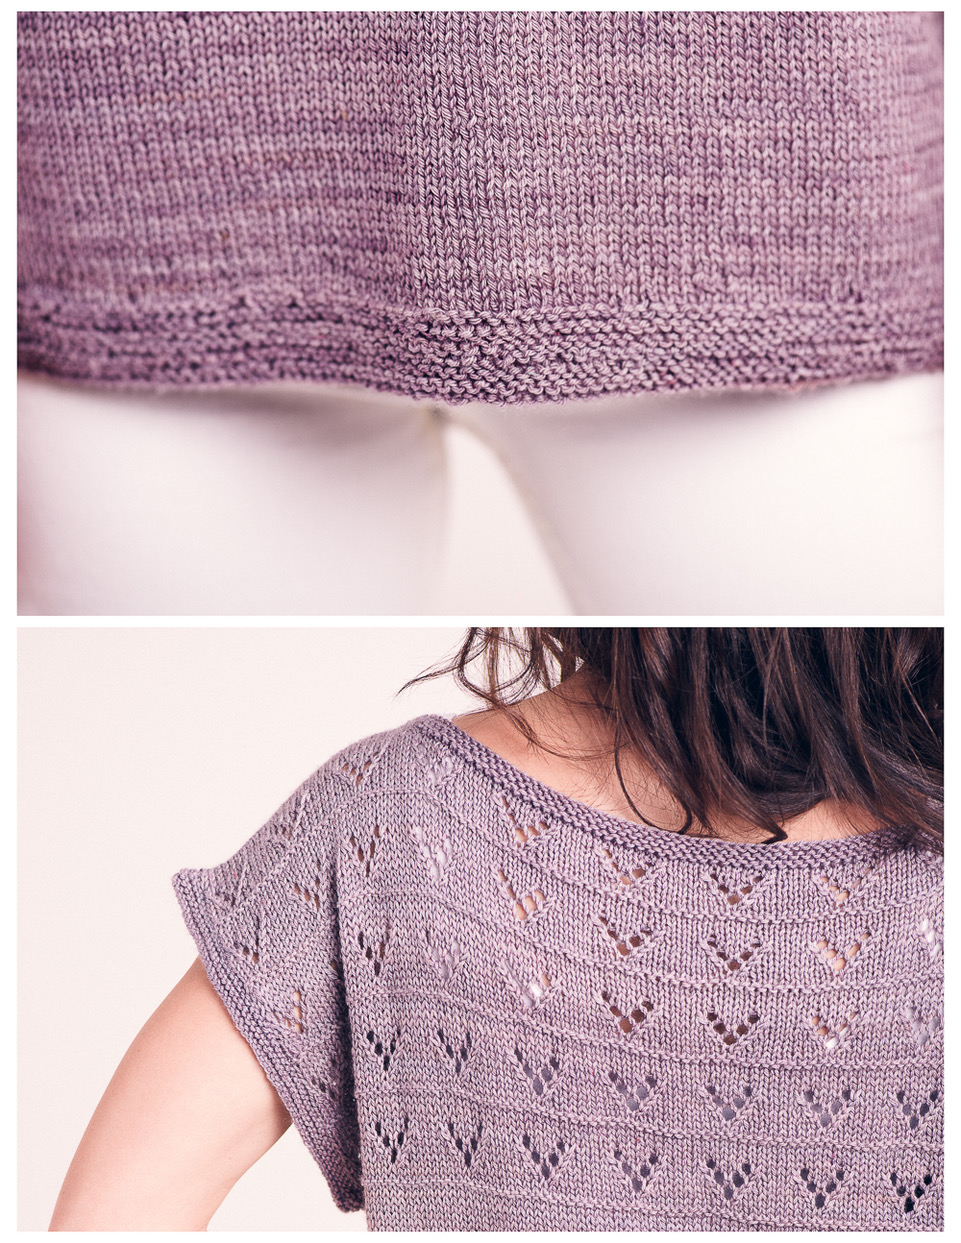 Hadi tee - knitting pattern